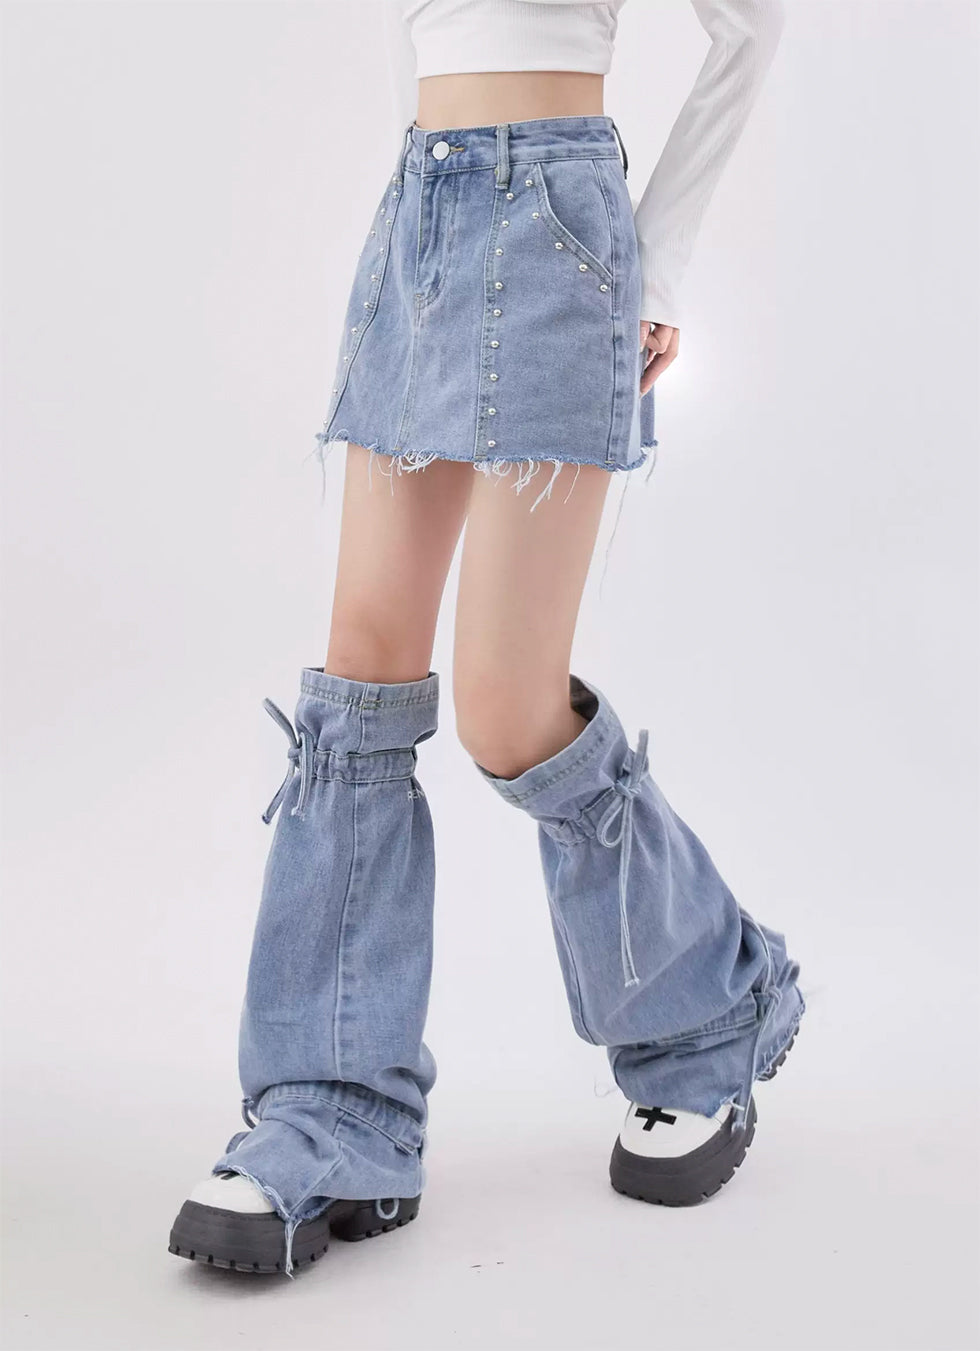 Leg Cover Denim Short Skirt - chiclara